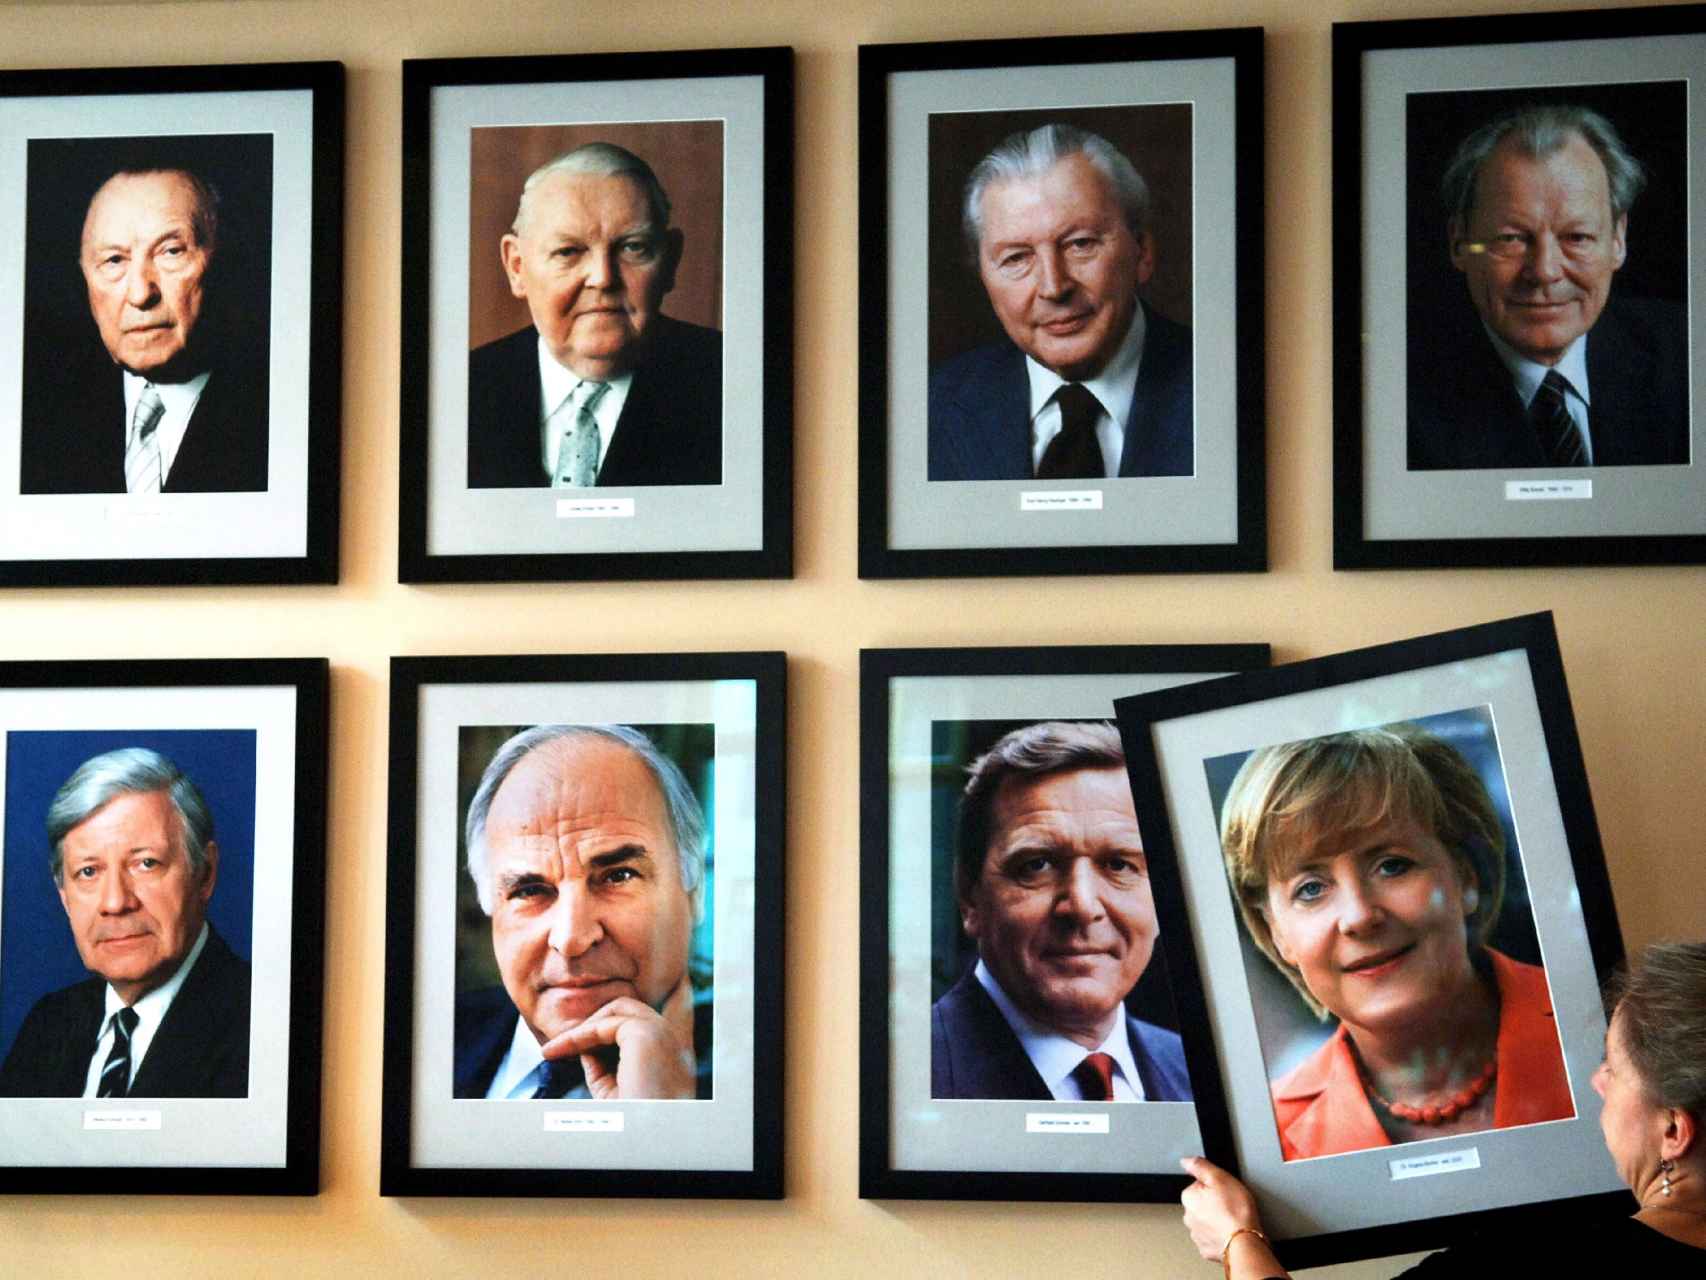 La imagen de la canciller alemana Angela Merkel, colgada en una pared con los retratos de los excancilleres (arriba, de izquierda a derecha) Konrad Adenauer, Ludwig Erhard, Kurt Georg Kiesinger, Willy Brandt, (abajo, de izquierda a derecha) Helmut Schmidt, Helmut Kohl y Gerhard Schroeder.